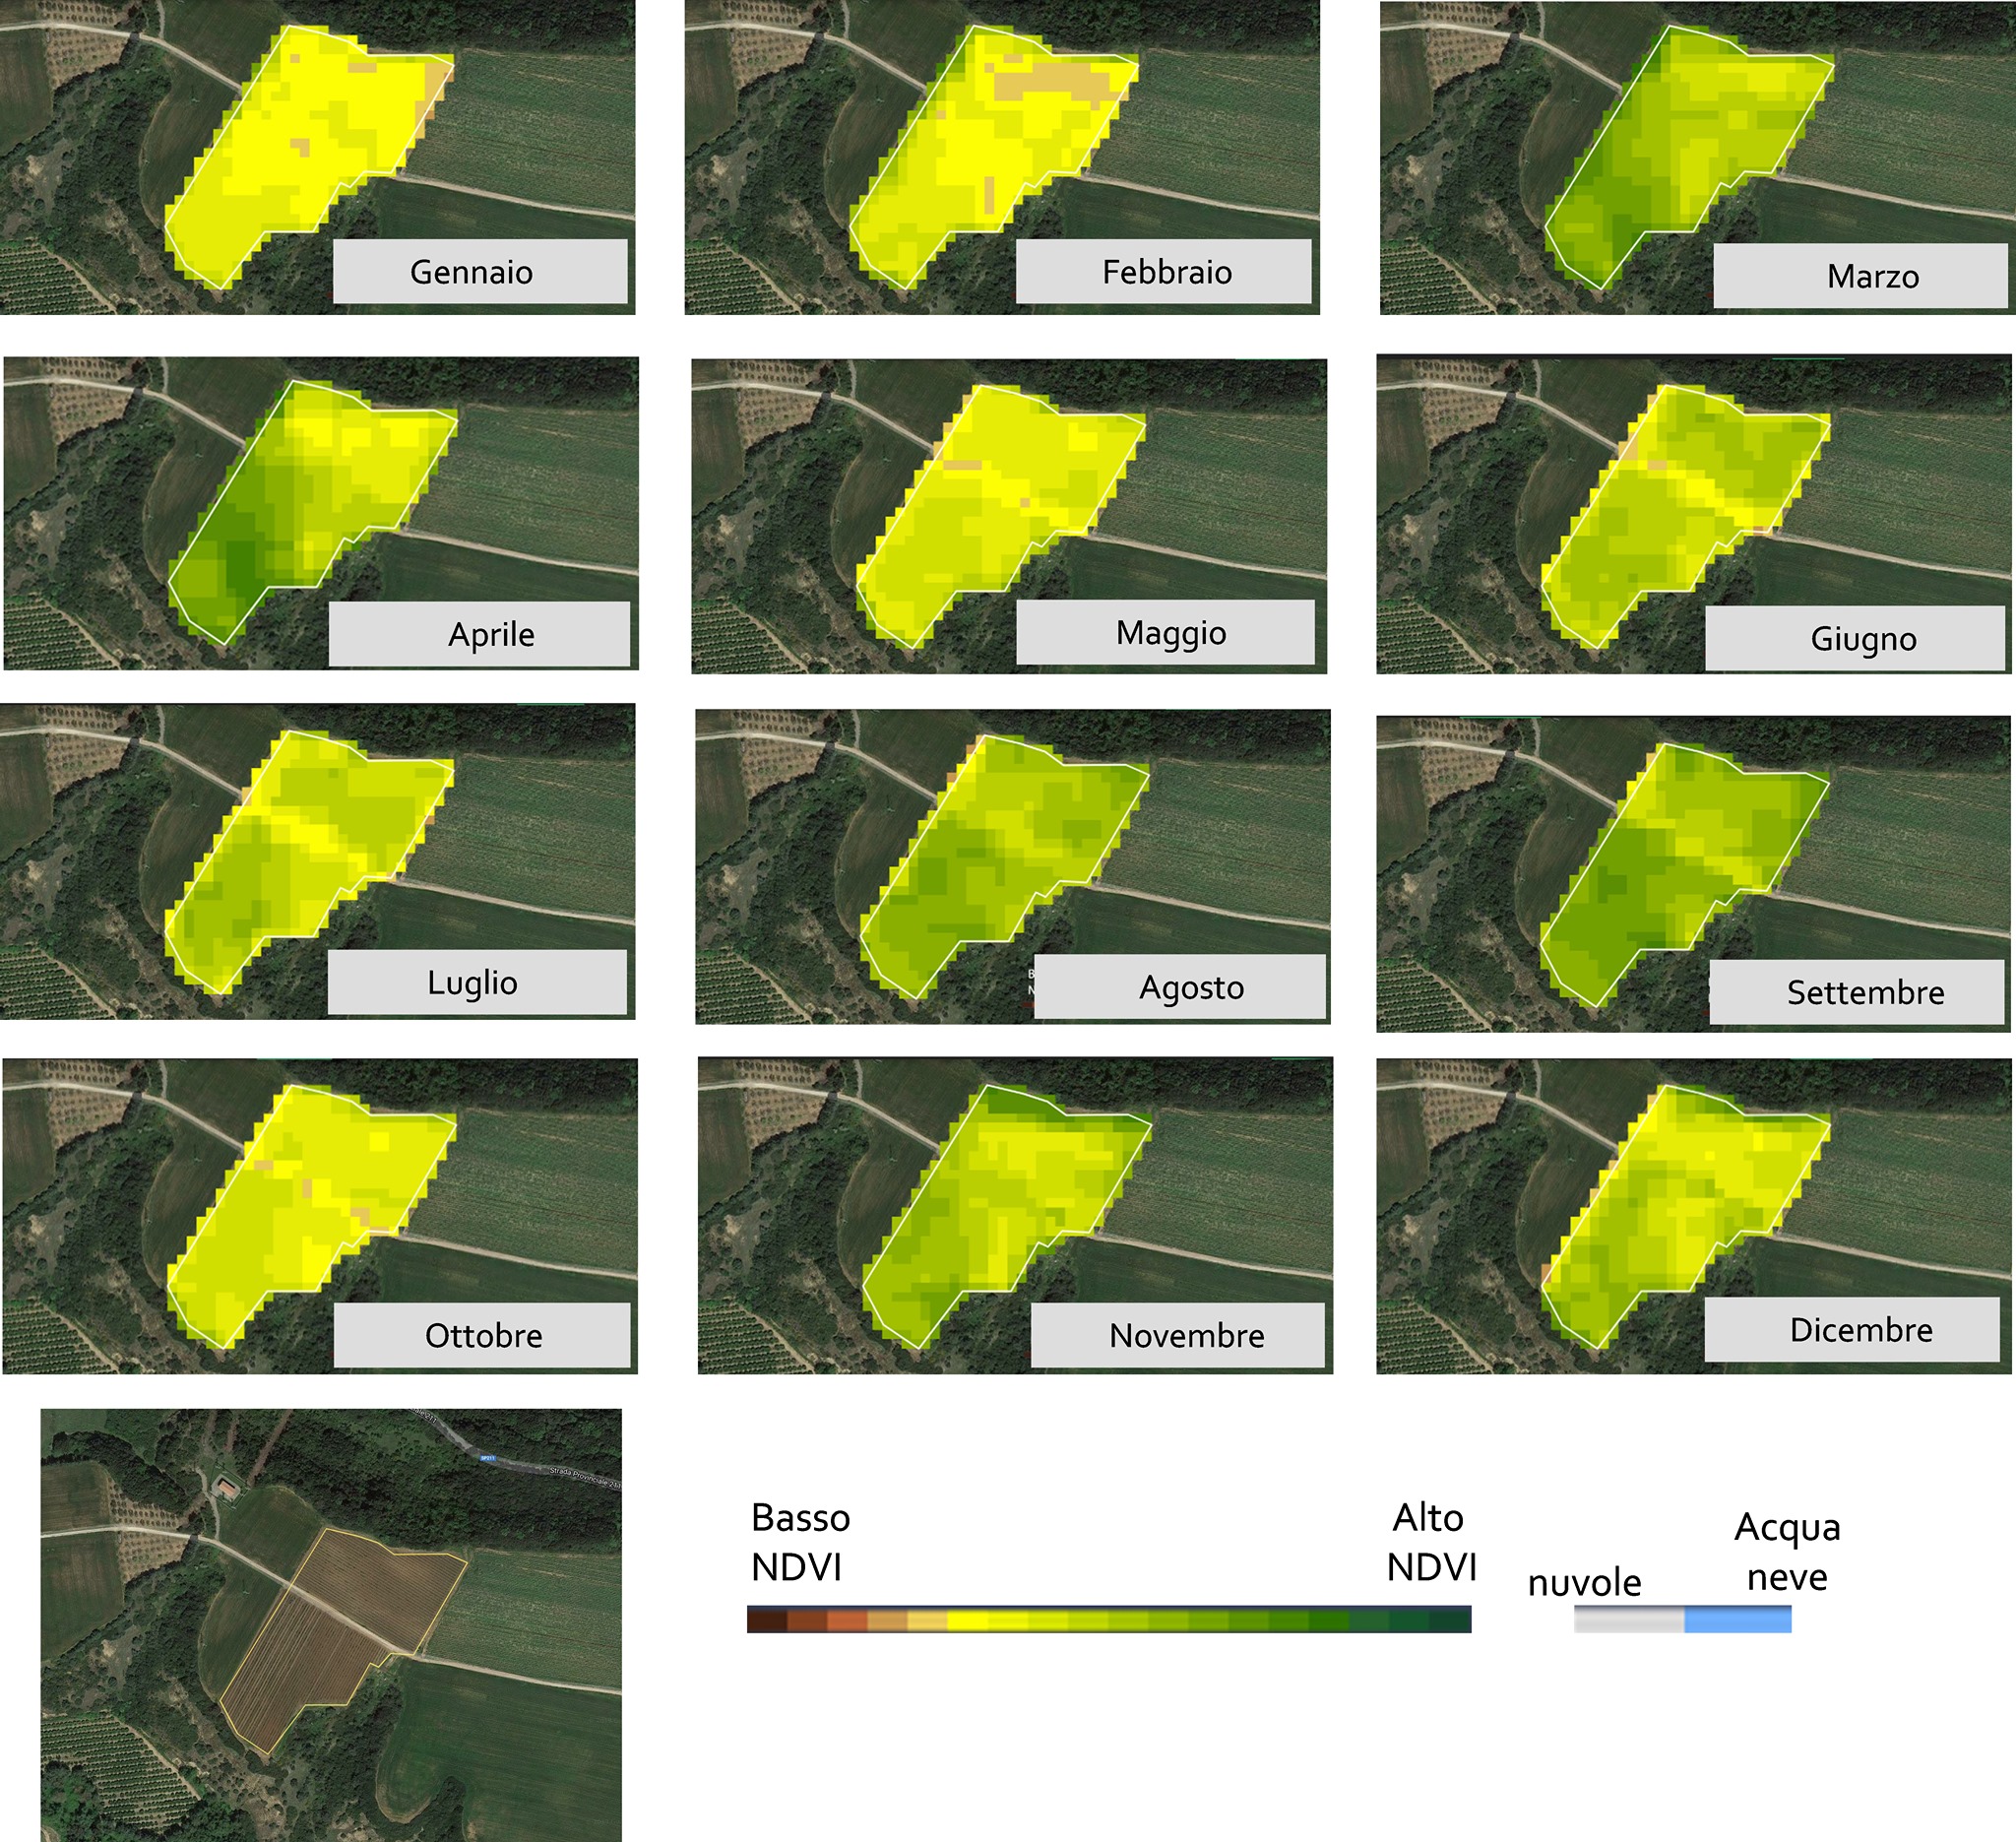 Figura 4. Sequenza di mappe NDVI da dati Sentinel 2 (una mappa per mese) per l’anno 2018 relative ad un vigneto ricadente nel comune di Montescaglioso (Matera). In basso composizione RGB a toni naturali di una immagine Sentinel 2 dell’area (il poligono bordato di giallo identifica l’area analizzata).